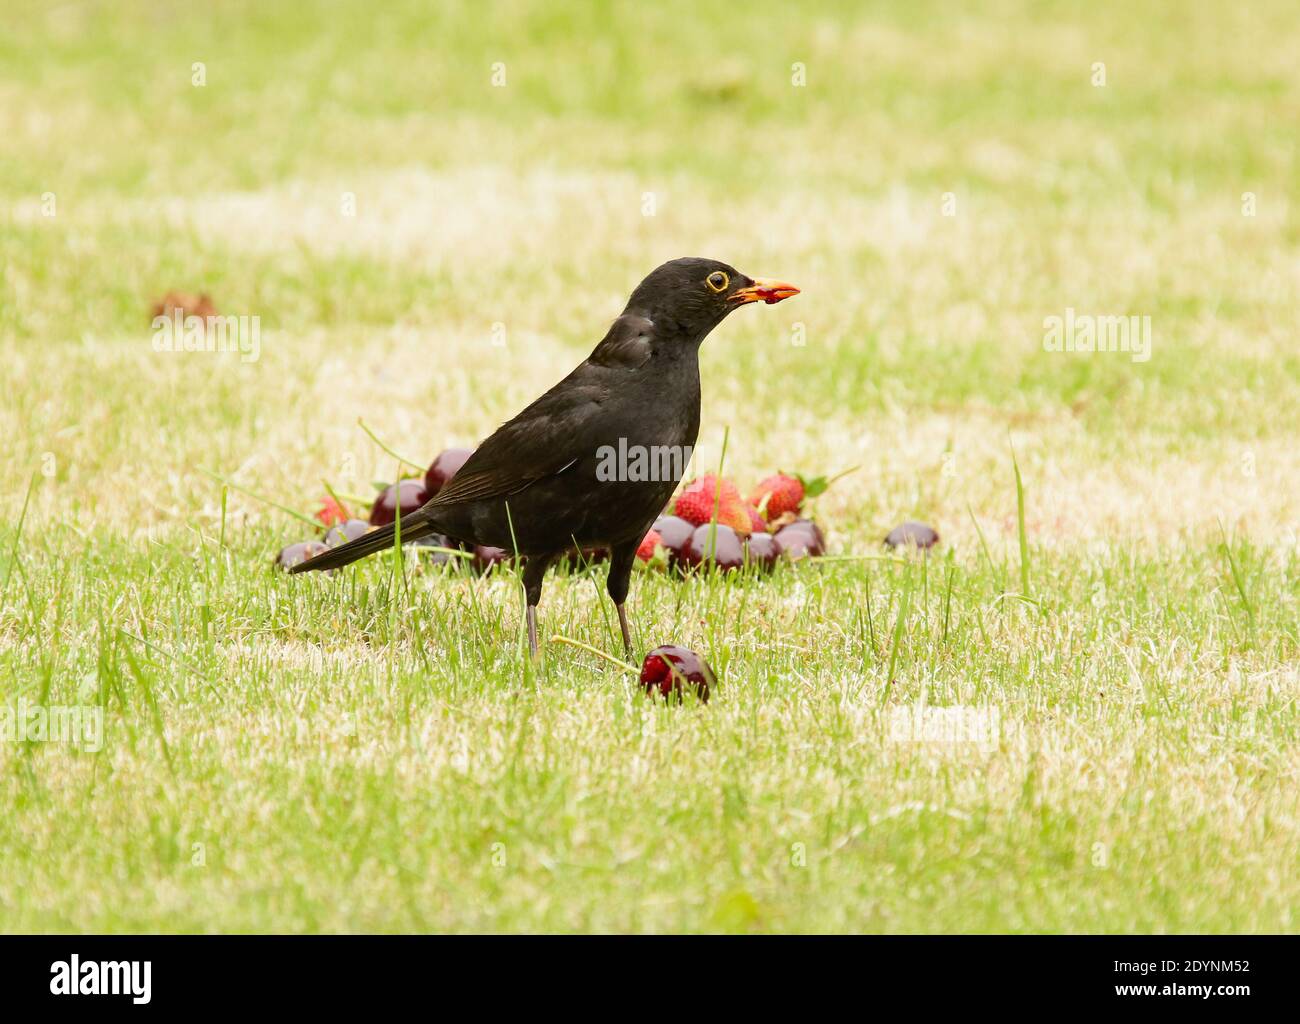 Un oiseau noir commun prenant des cerises et des fraises laissées sur une pelouse. Banque D'Images